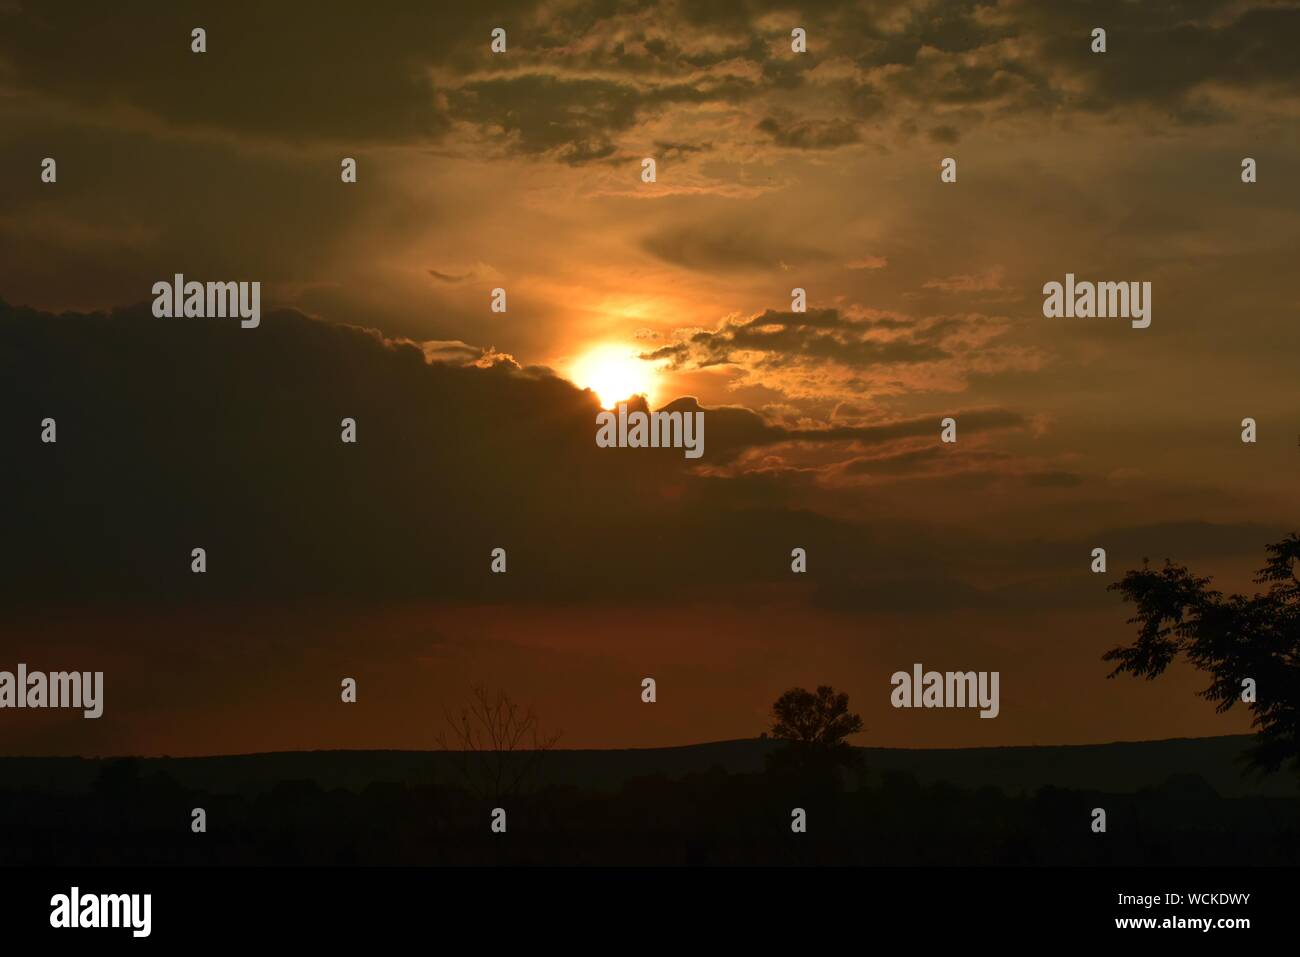 Silhouette des arbres contre ciel dramatique pendant le coucher du soleil Banque D'Images